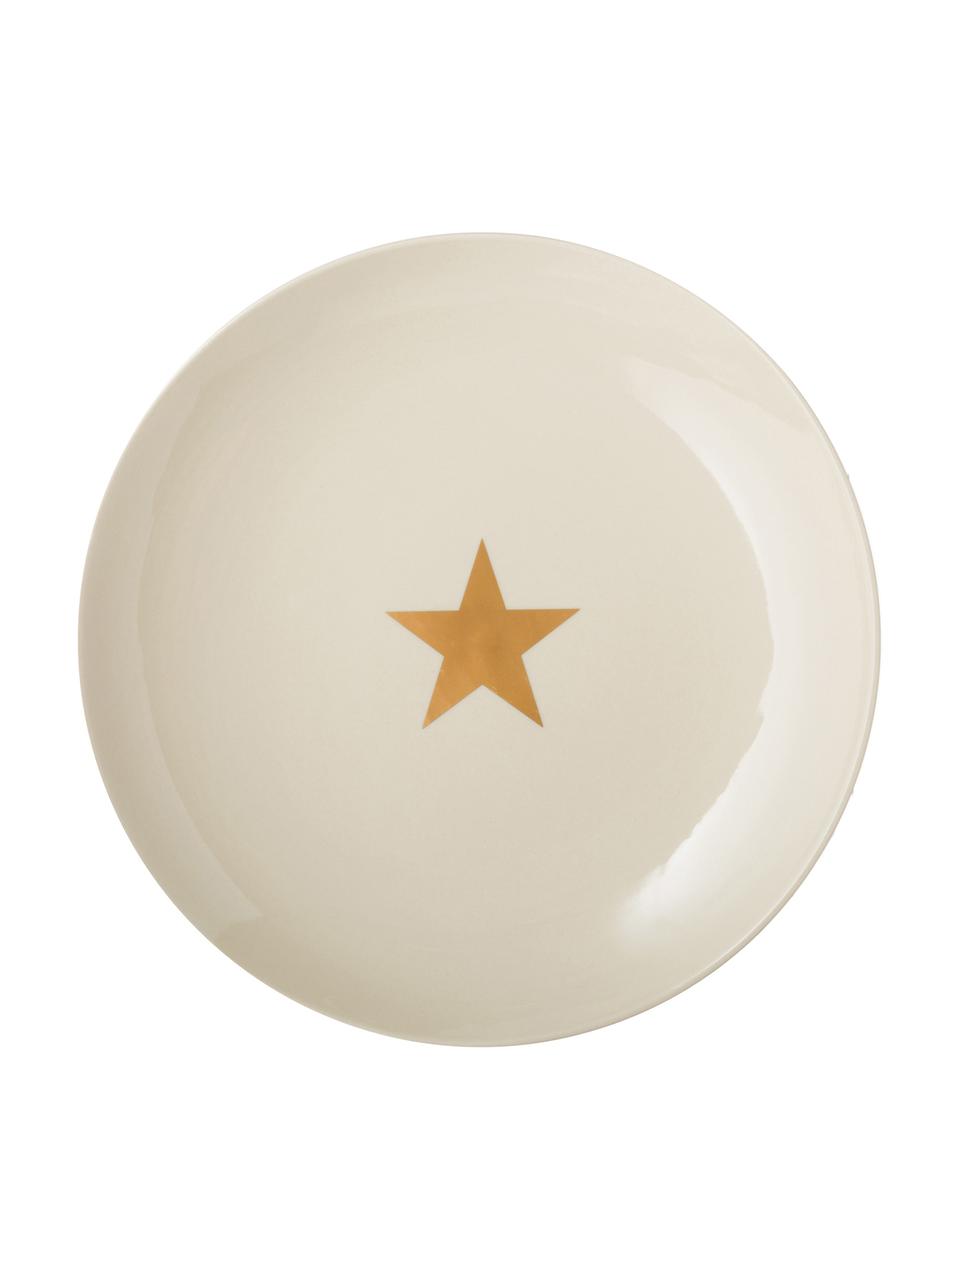 Speiseteller Star mit goldenem Stern, Keramik, Gebrochenes Weiss, Goldfarben, Ø 25 cm